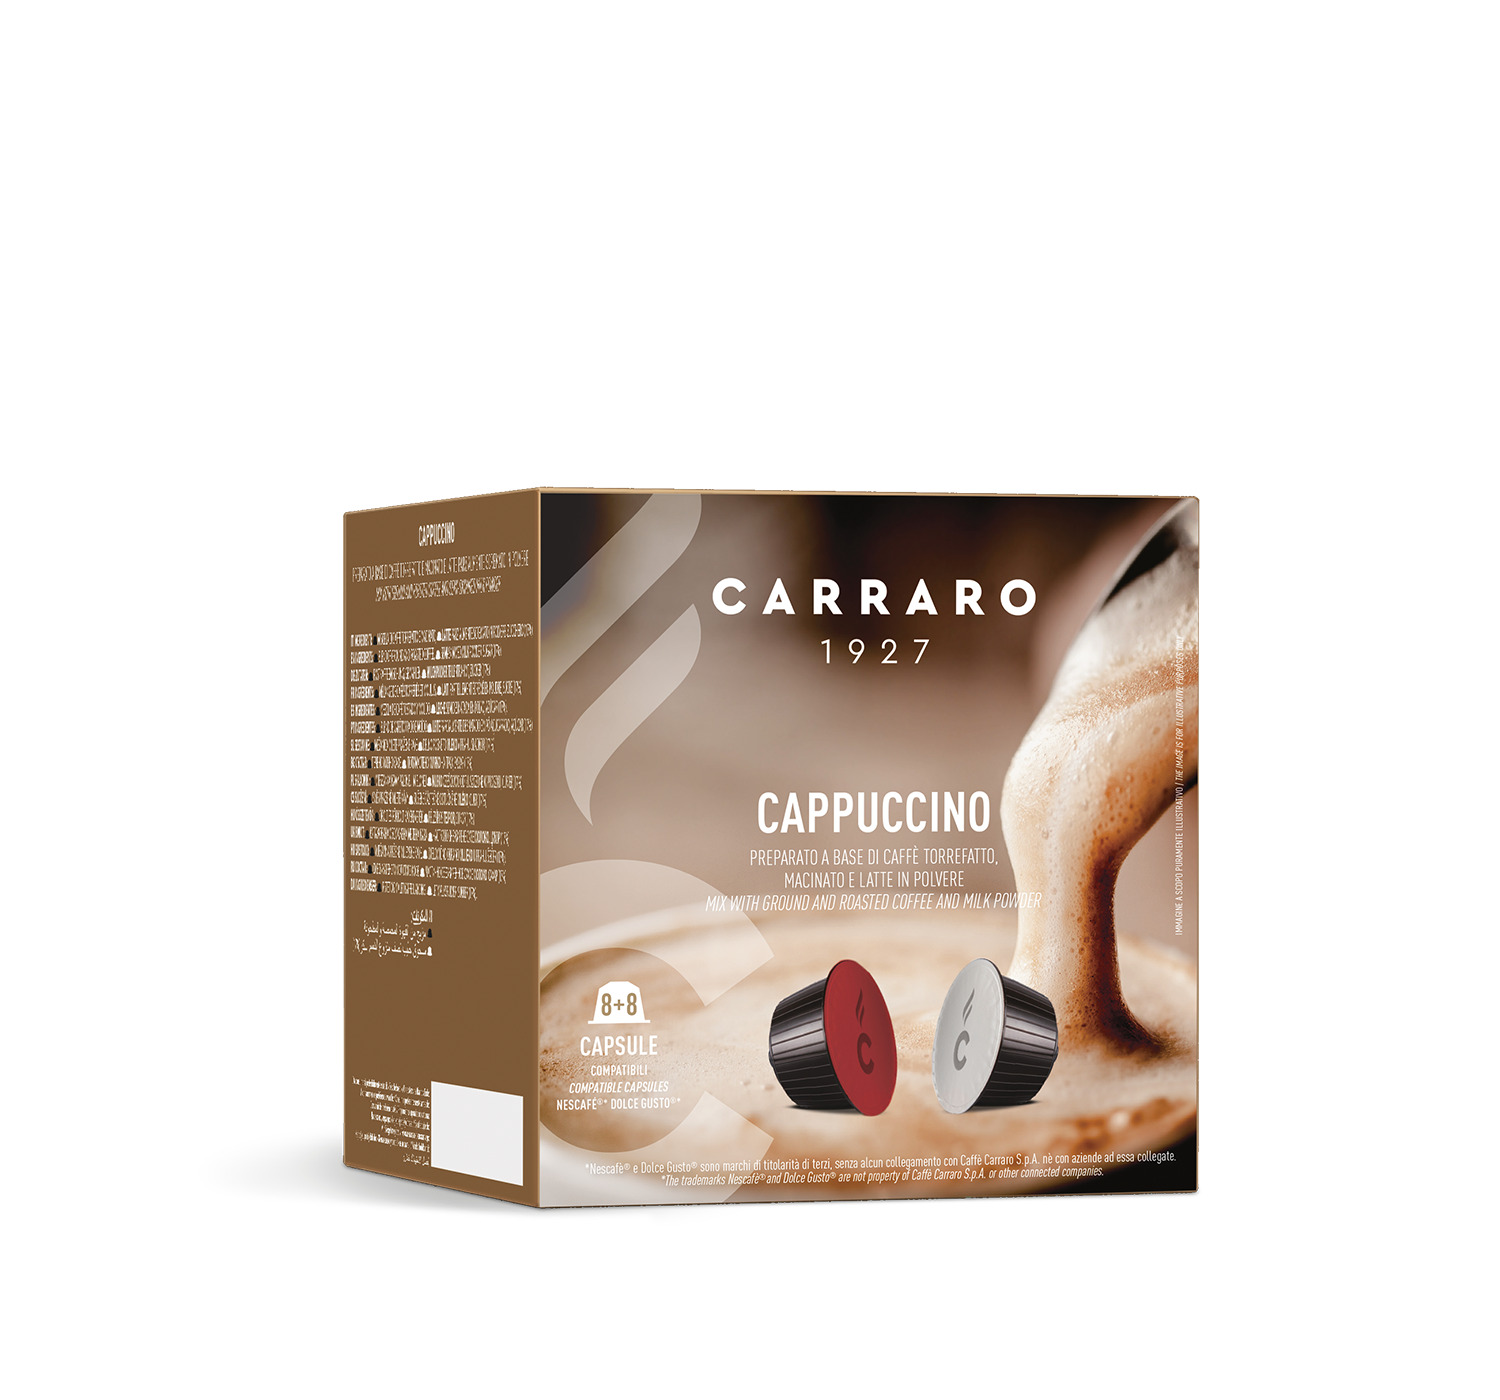 Capsule - Cappuccino – 16 capsule compatibili Dolce Gusto®* - Shop online Caffè Carraro